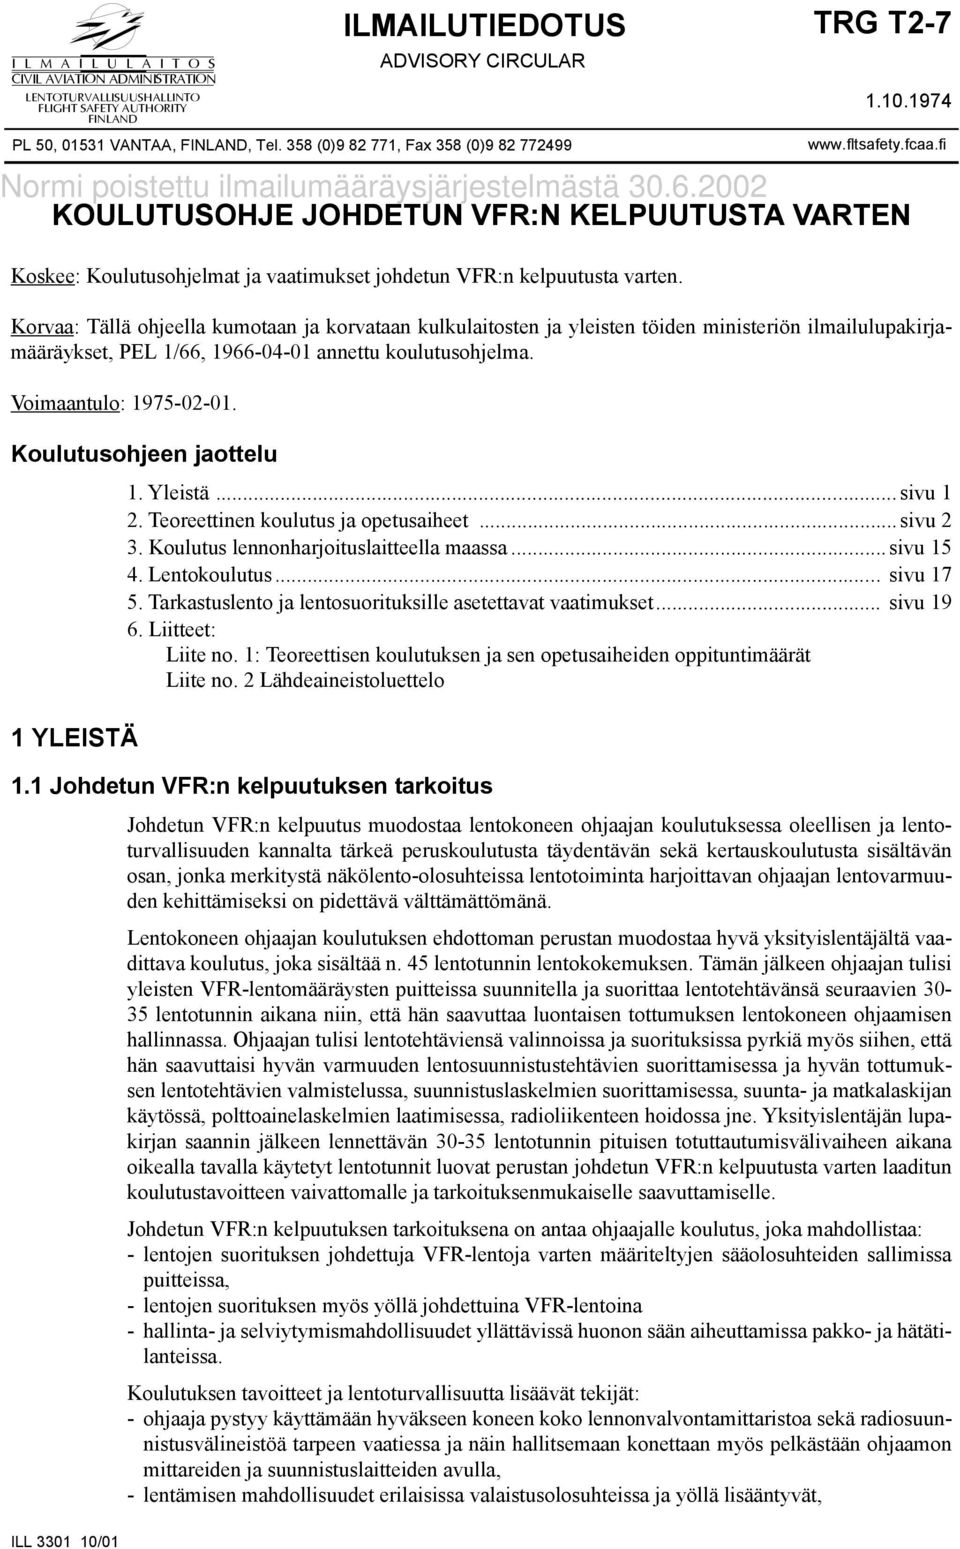 2002 KOULUTUSOHJE JOHDETUN VFR:N KELPUUTUSTA VARTEN Koskee: Koulutusohjelmat ja vaatimukset johdetun VFR:n kelpuutusta varten. ILL 3301 10/